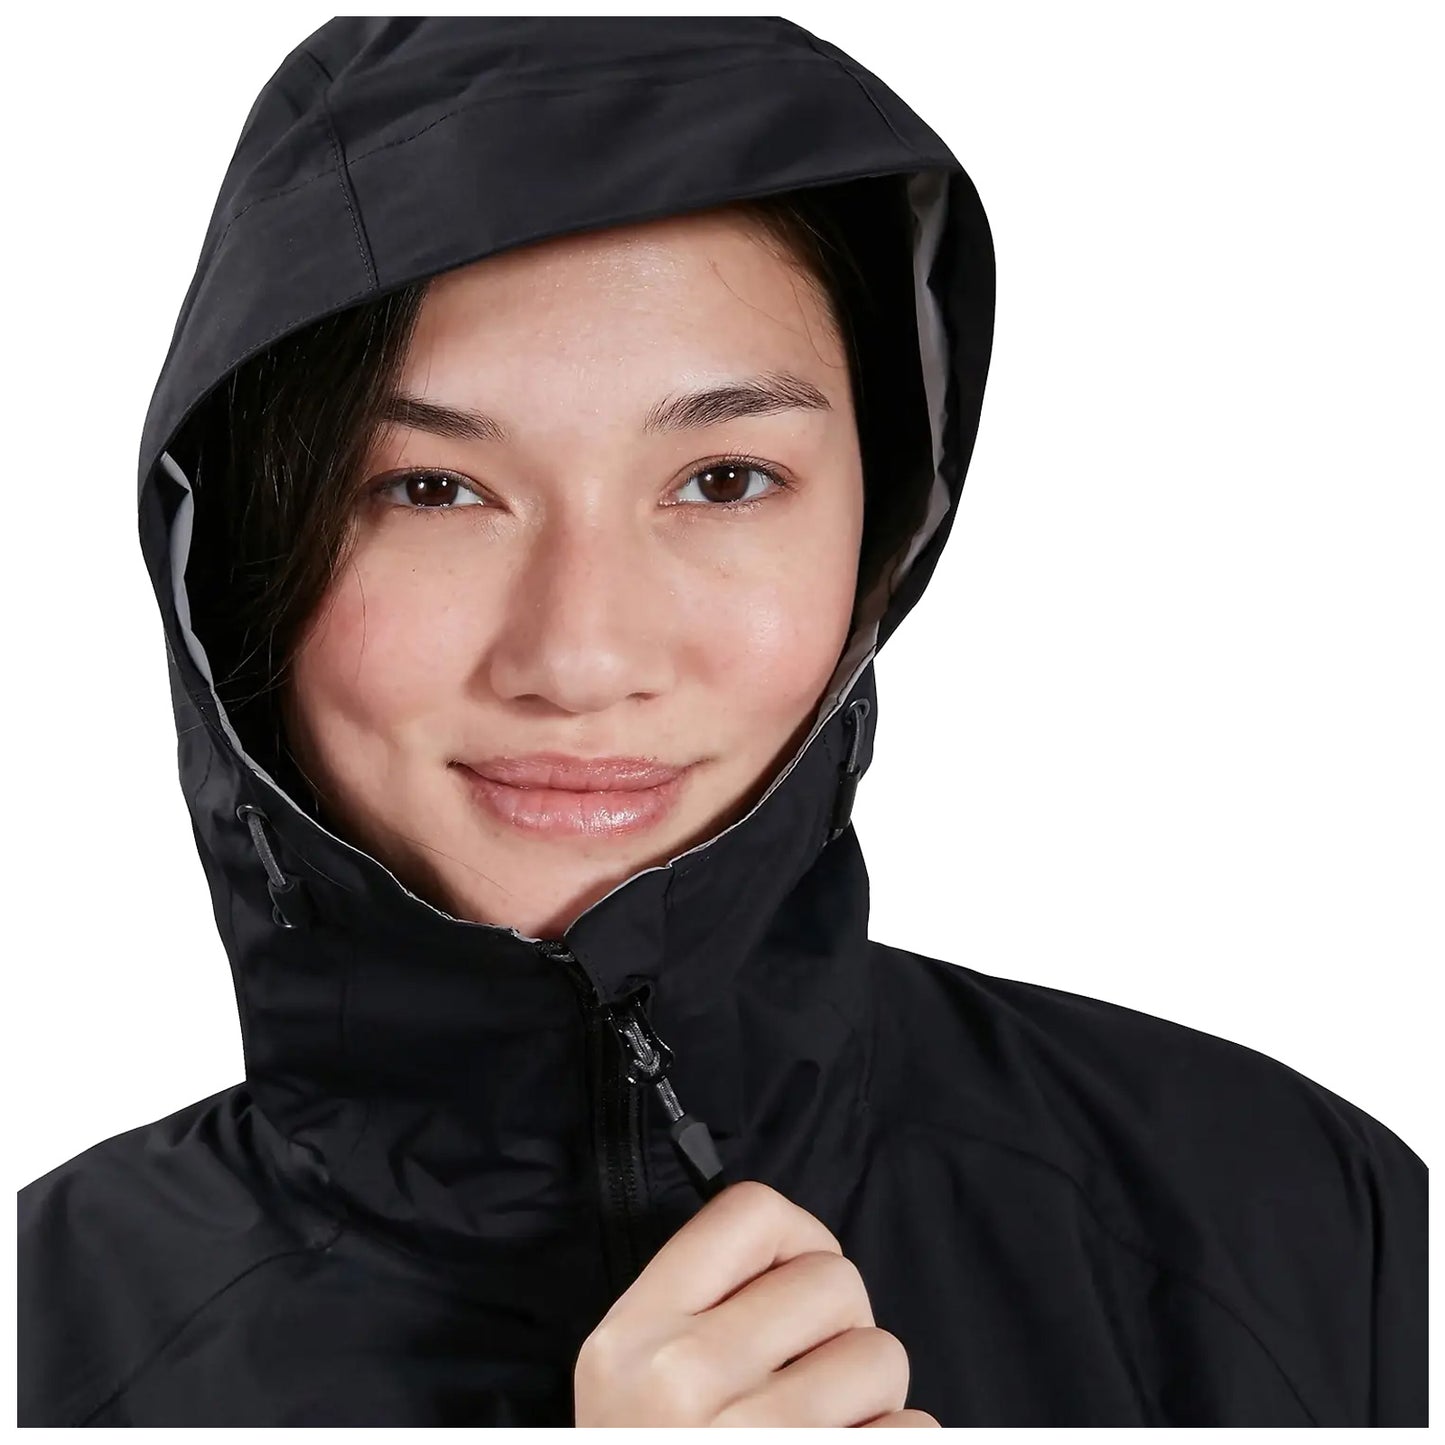 Berghaus Ladies Deluge Pro Waterproof Jacket